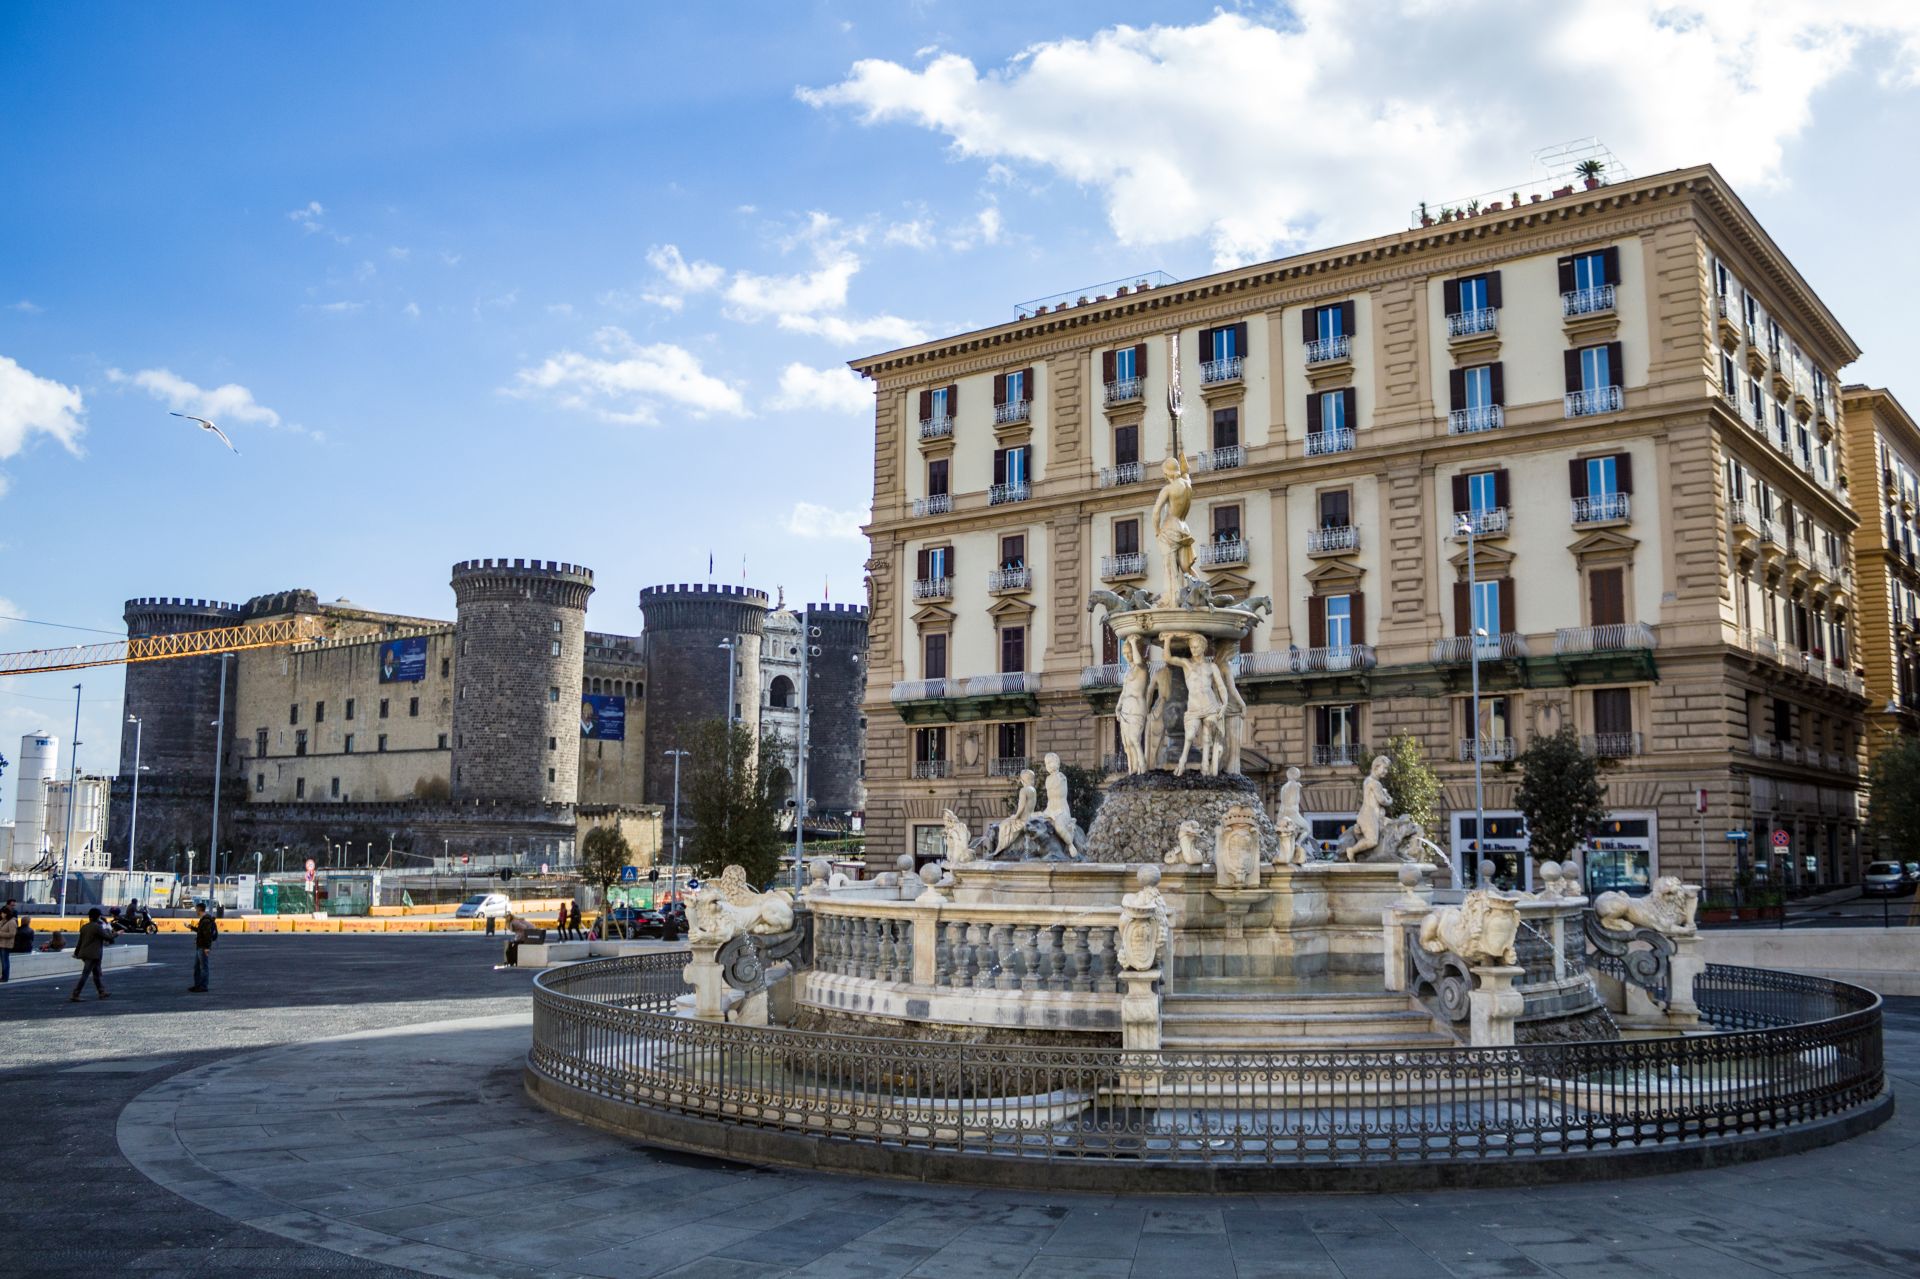 Maschio-angioino-Castle-and-Neptune-fountain-at-Municipio-square-in-Napoli-Italy